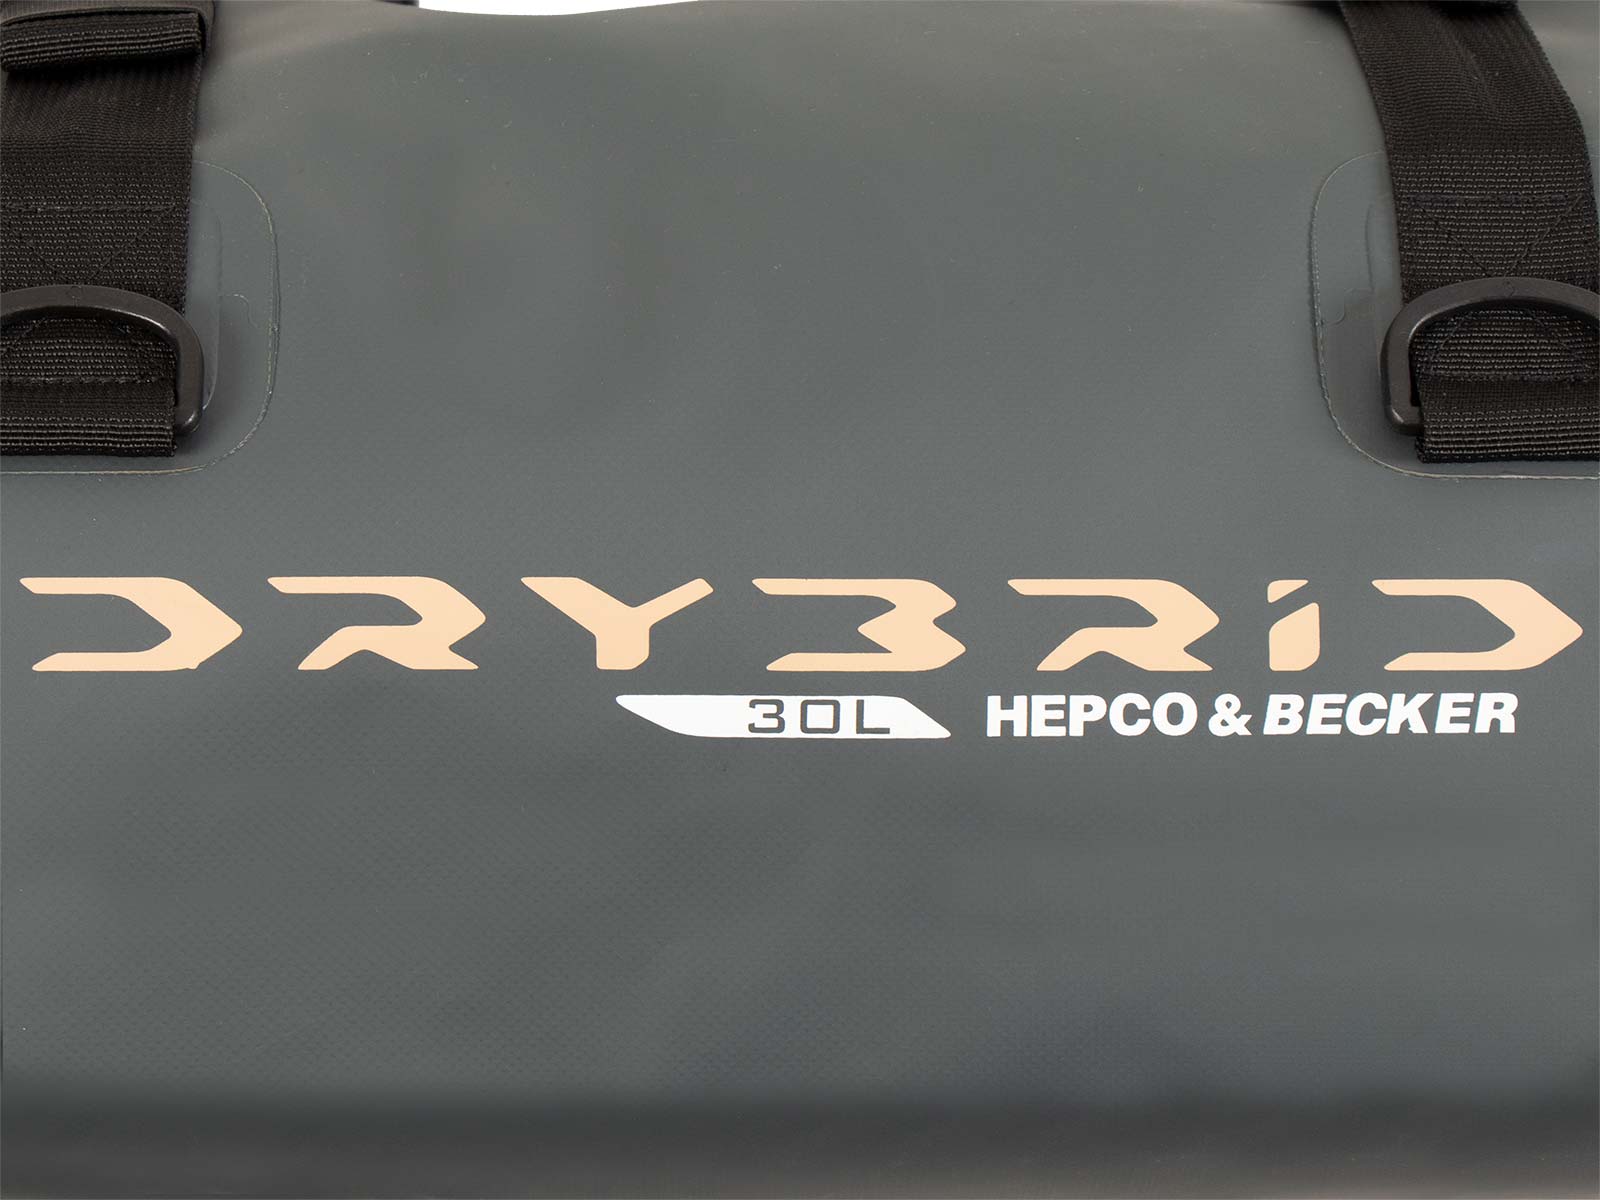 Drybrid Bag 30L